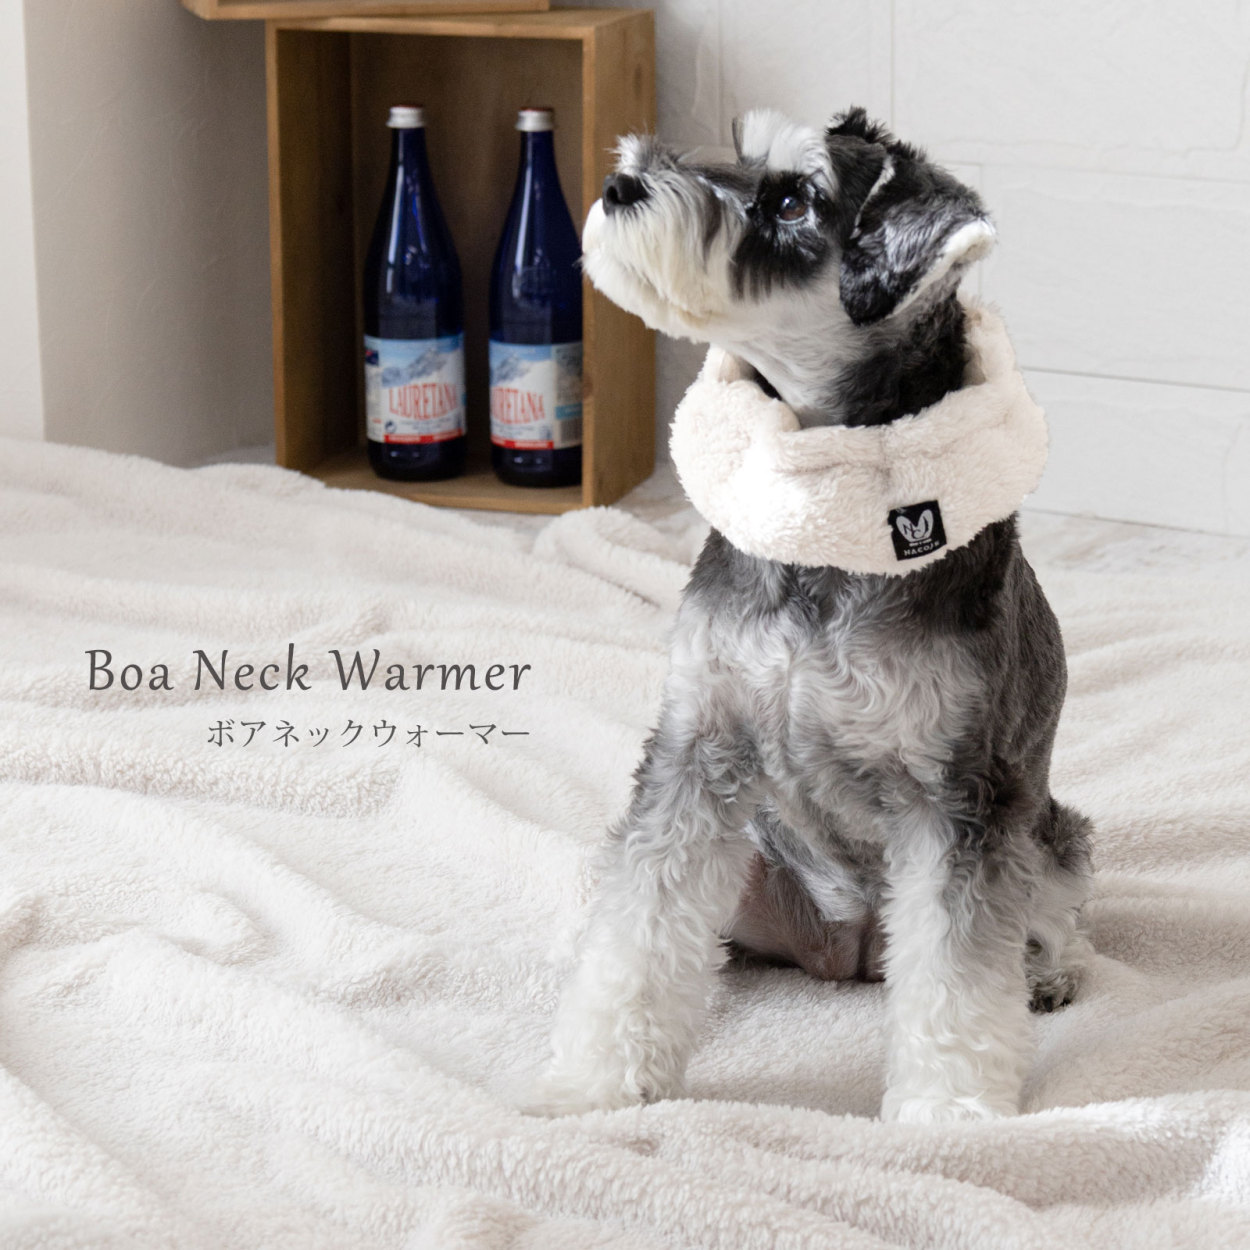 日本製 犬 ペット用 秋 暖かい 服 ボア おしゃれ 防寒 いぬ 冬 ネックウォーマー マフラー フリース 寒さ対策 スヌード ナコル 